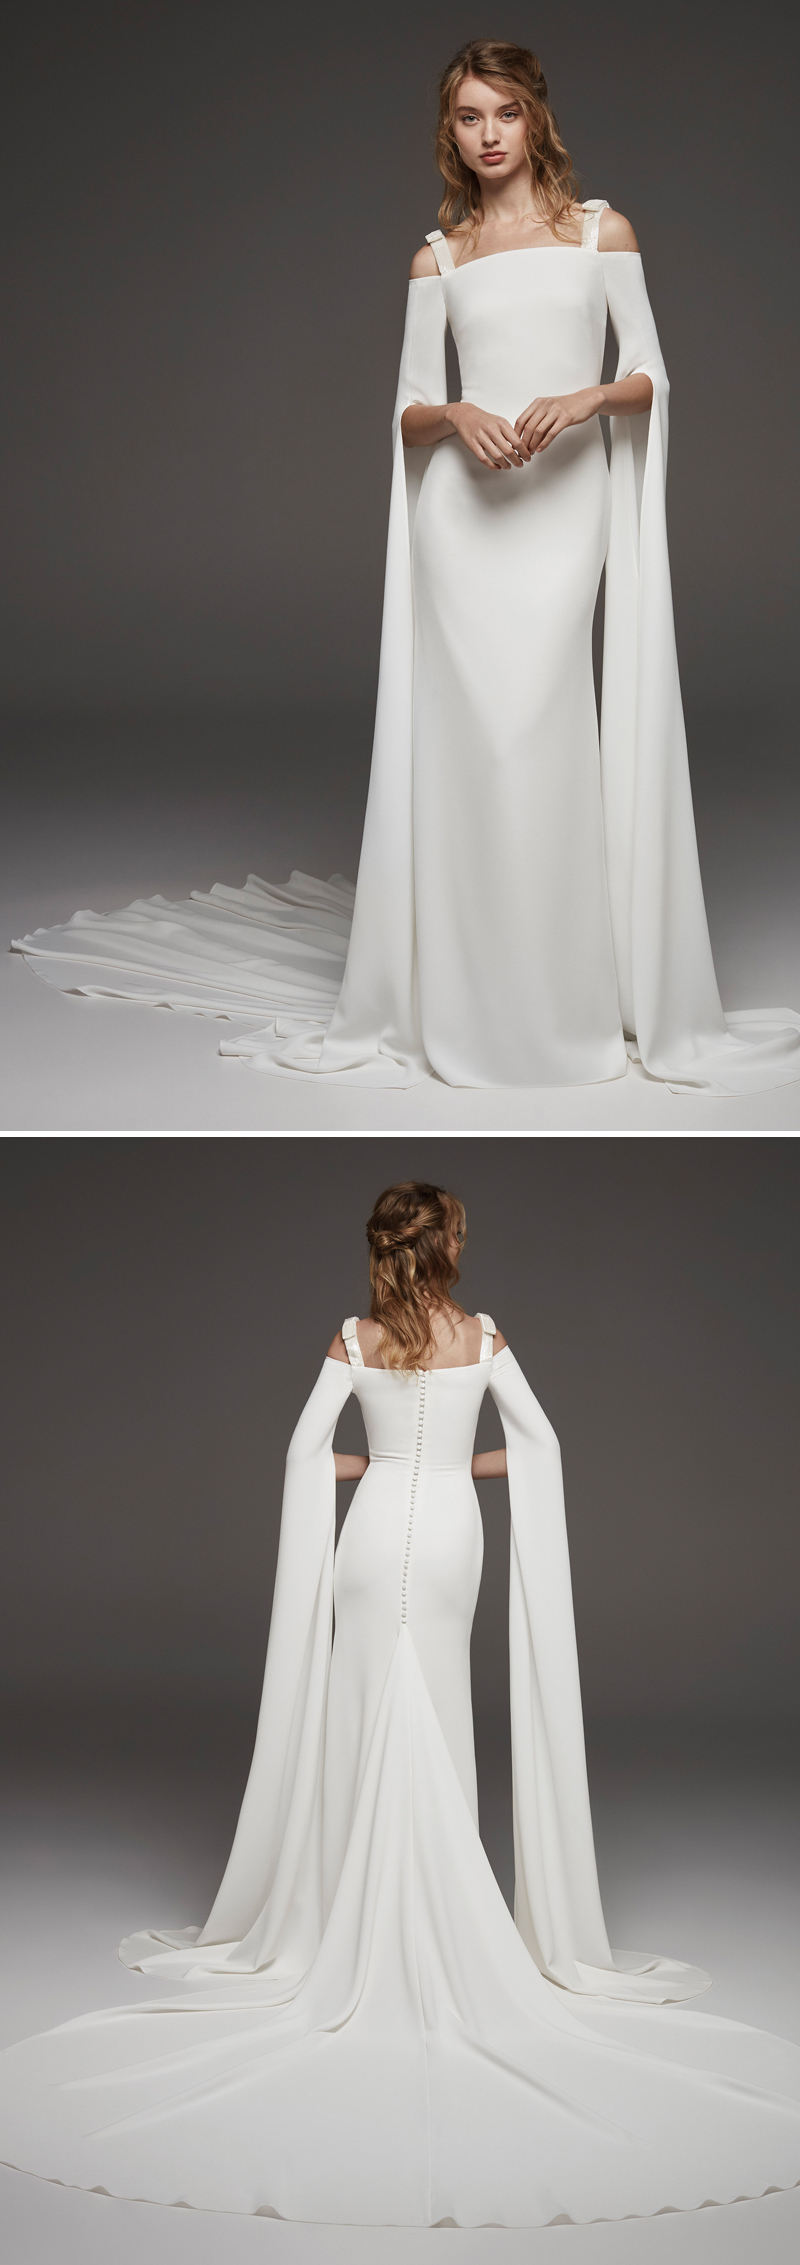 Pronovias, Atelier Pronovias, Pronovias 2019 preview, Hervé Moreau, Pronovias Wedding Dresses, Perfect Wedding Magazine, Pronovias Bride